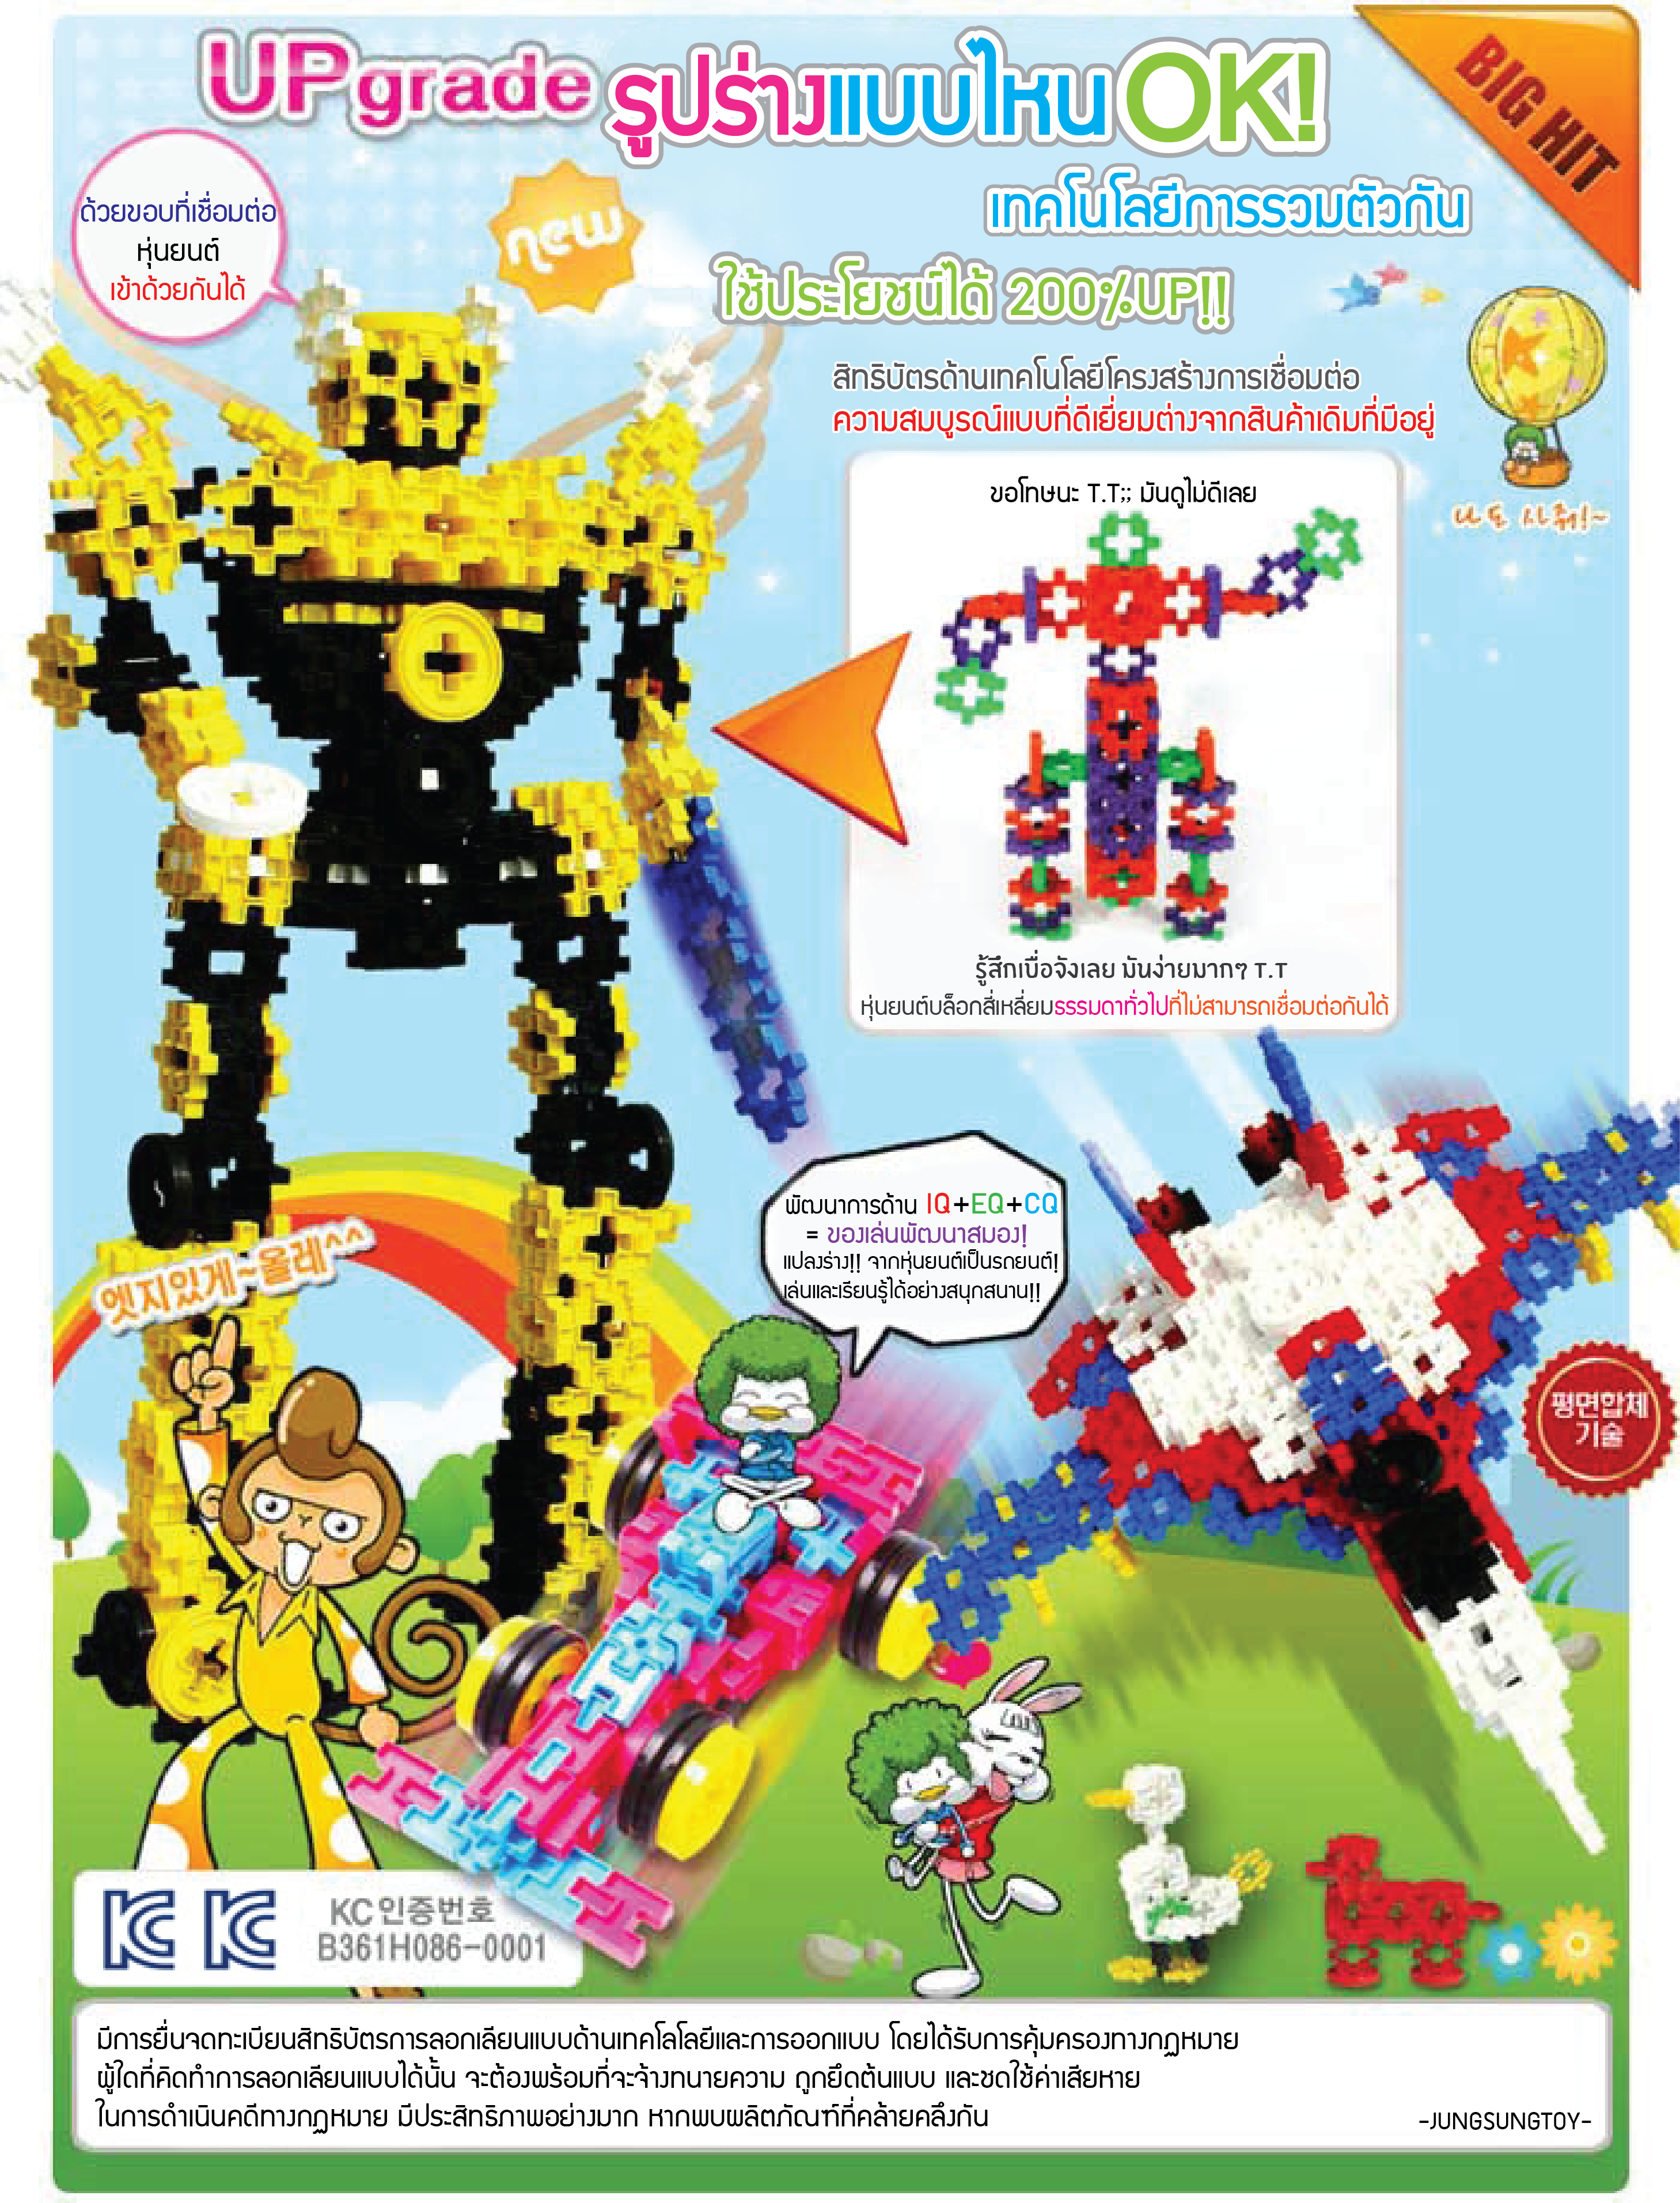 บล็อกตัวต่อ ของเล่นเด็ก ตัวต่อเลโก้ ชุดตัวต่อ บล็อกอัจฉริยะ บล็อกเคลื่อนไหว Talented - Moving Block จำนวน 230 ชิ้น  บล็อกตัวต่อ